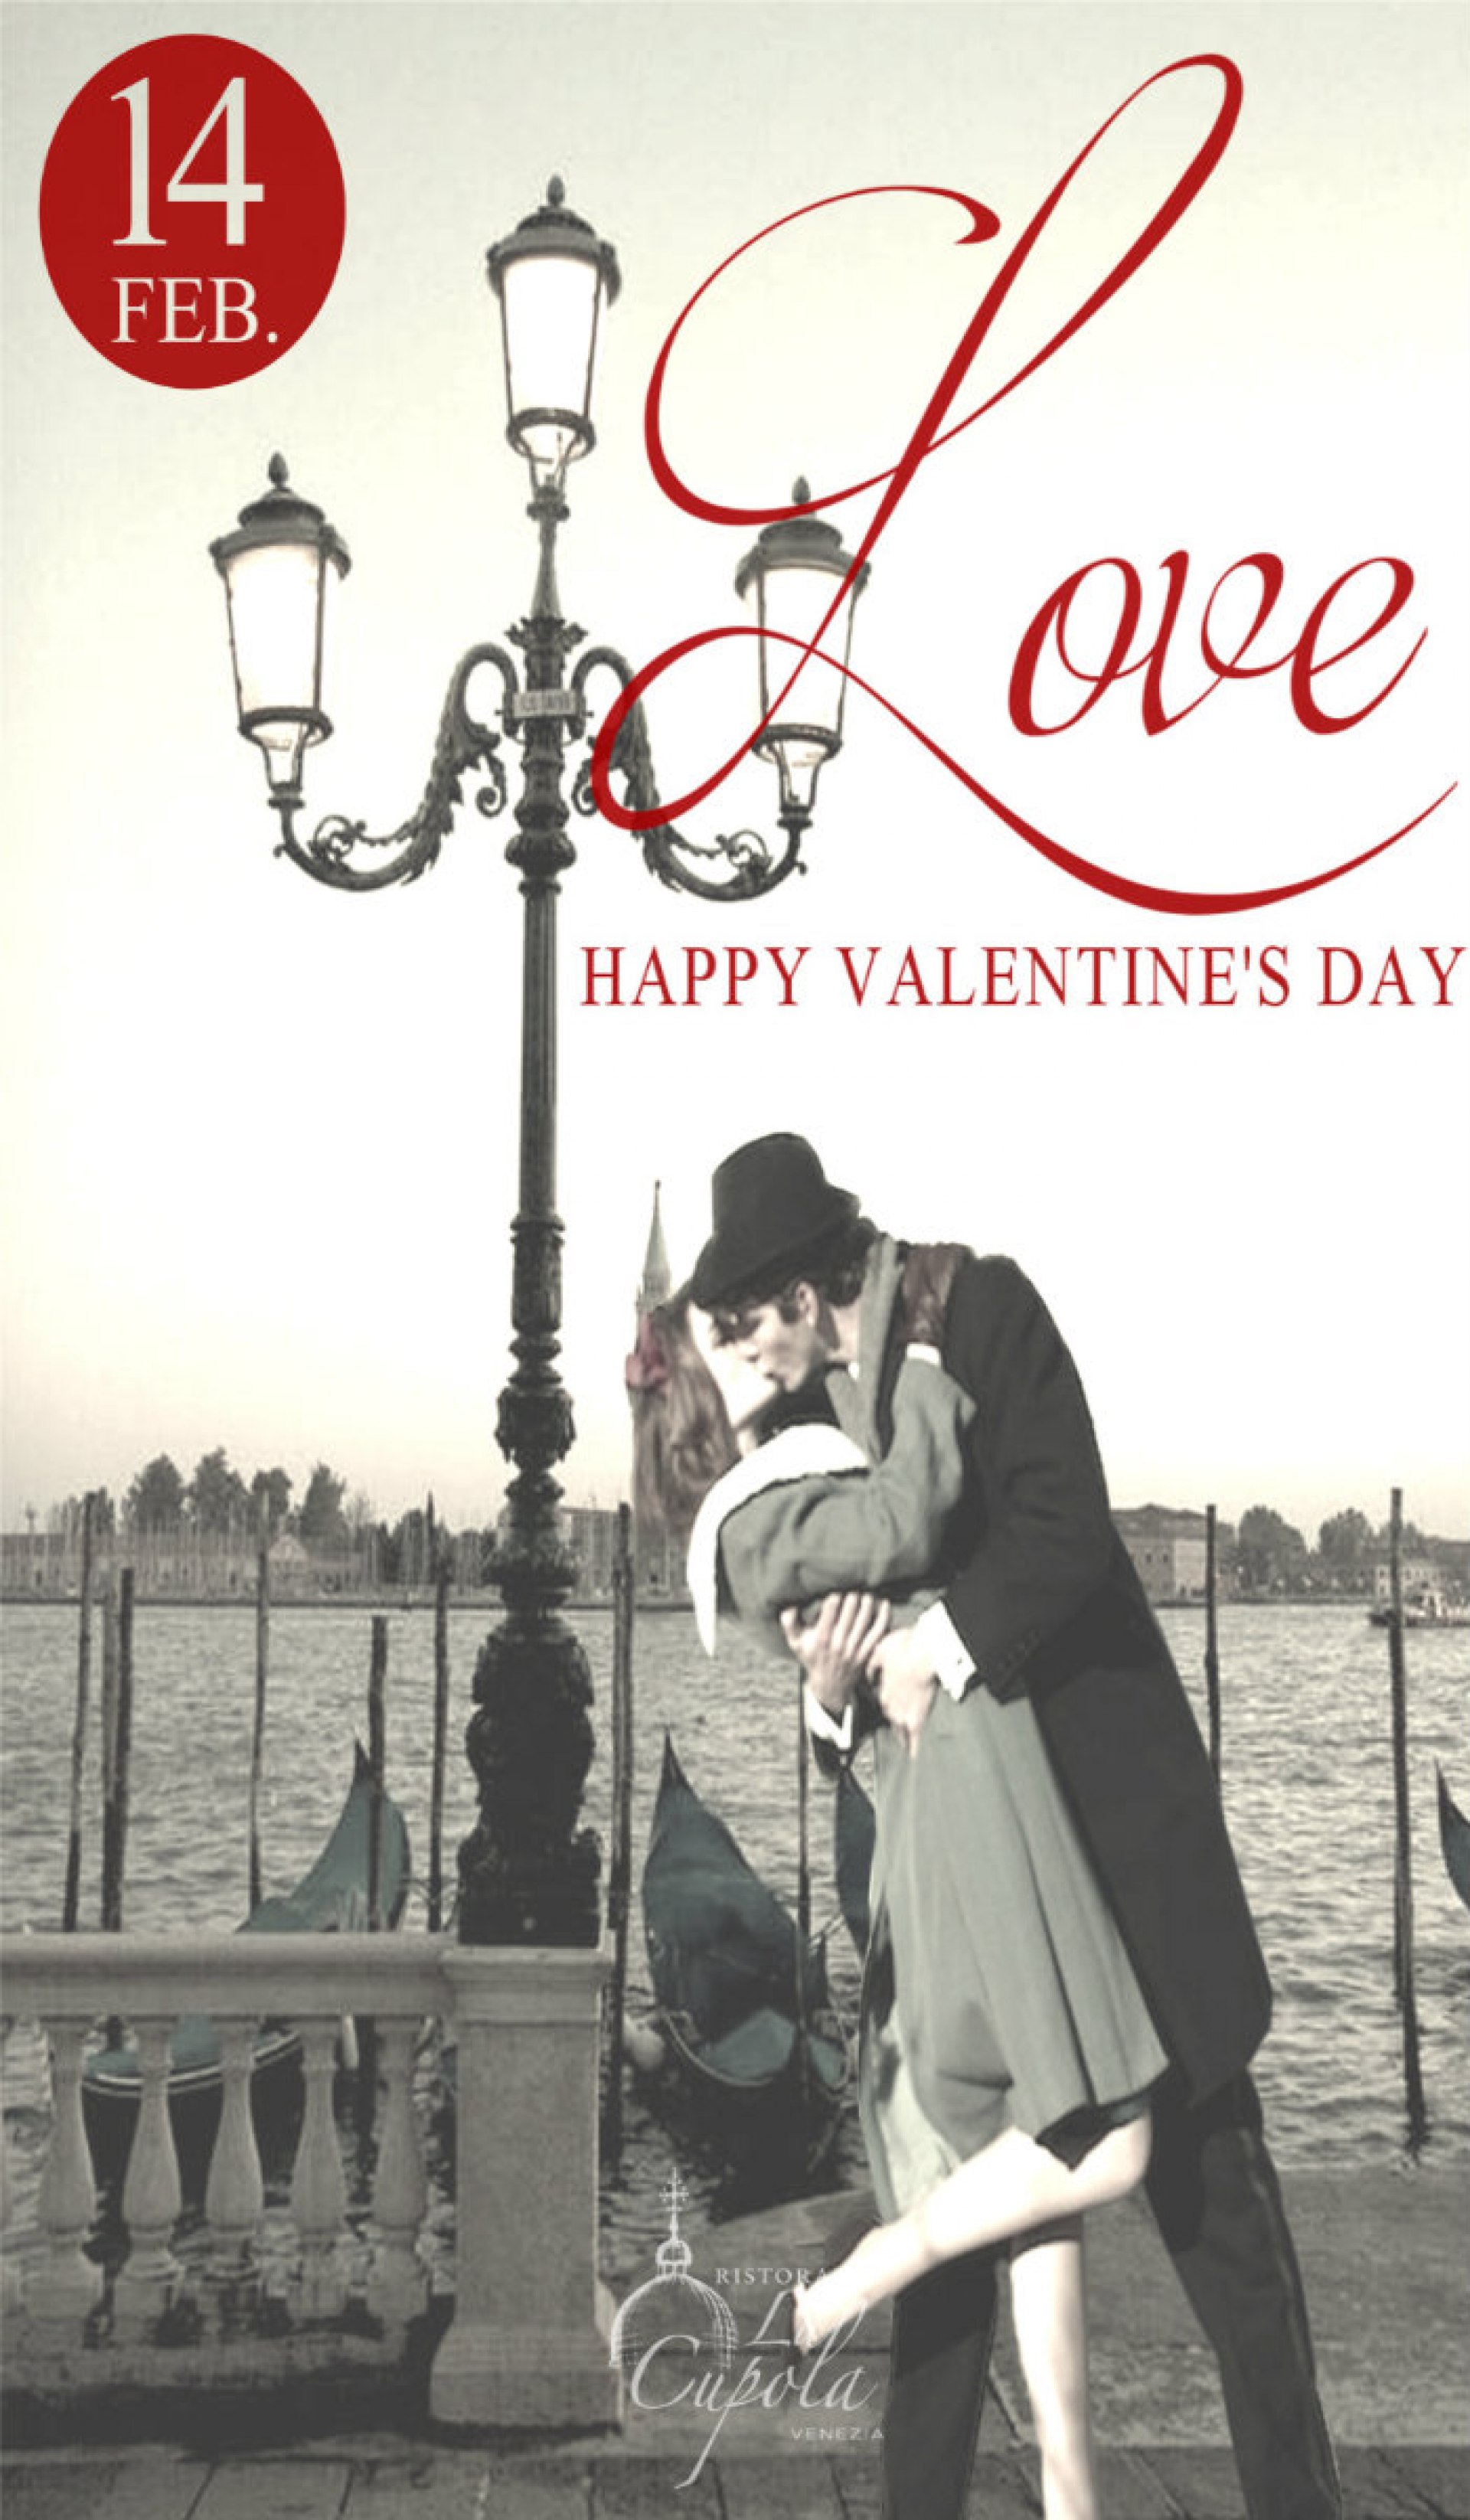 Valentine’s Day in Venice